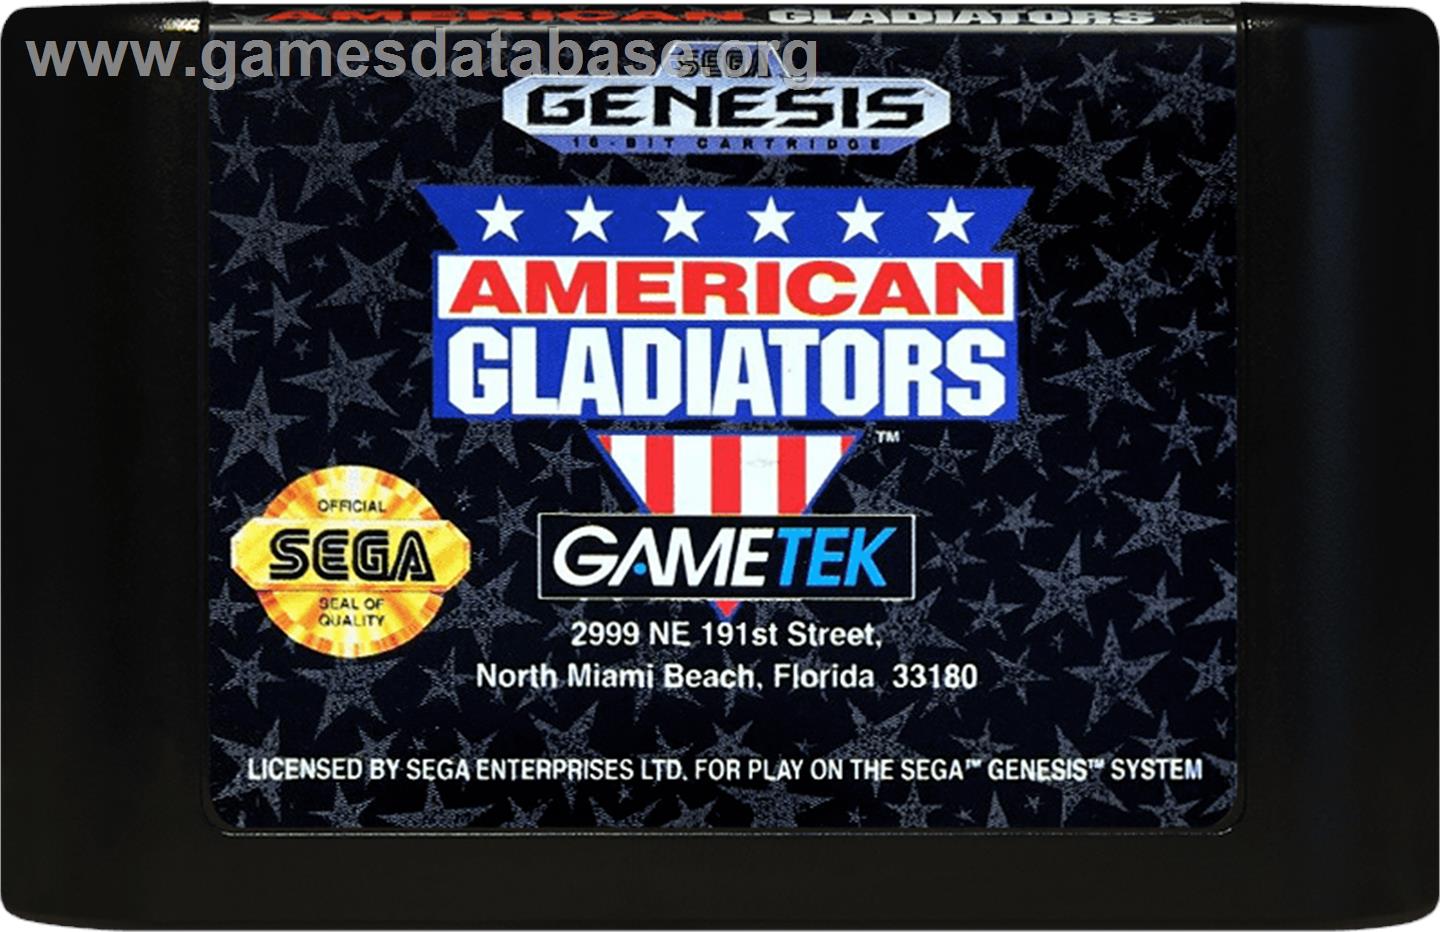 American Gladiators - Sega Genesis - Artwork - Cartridge